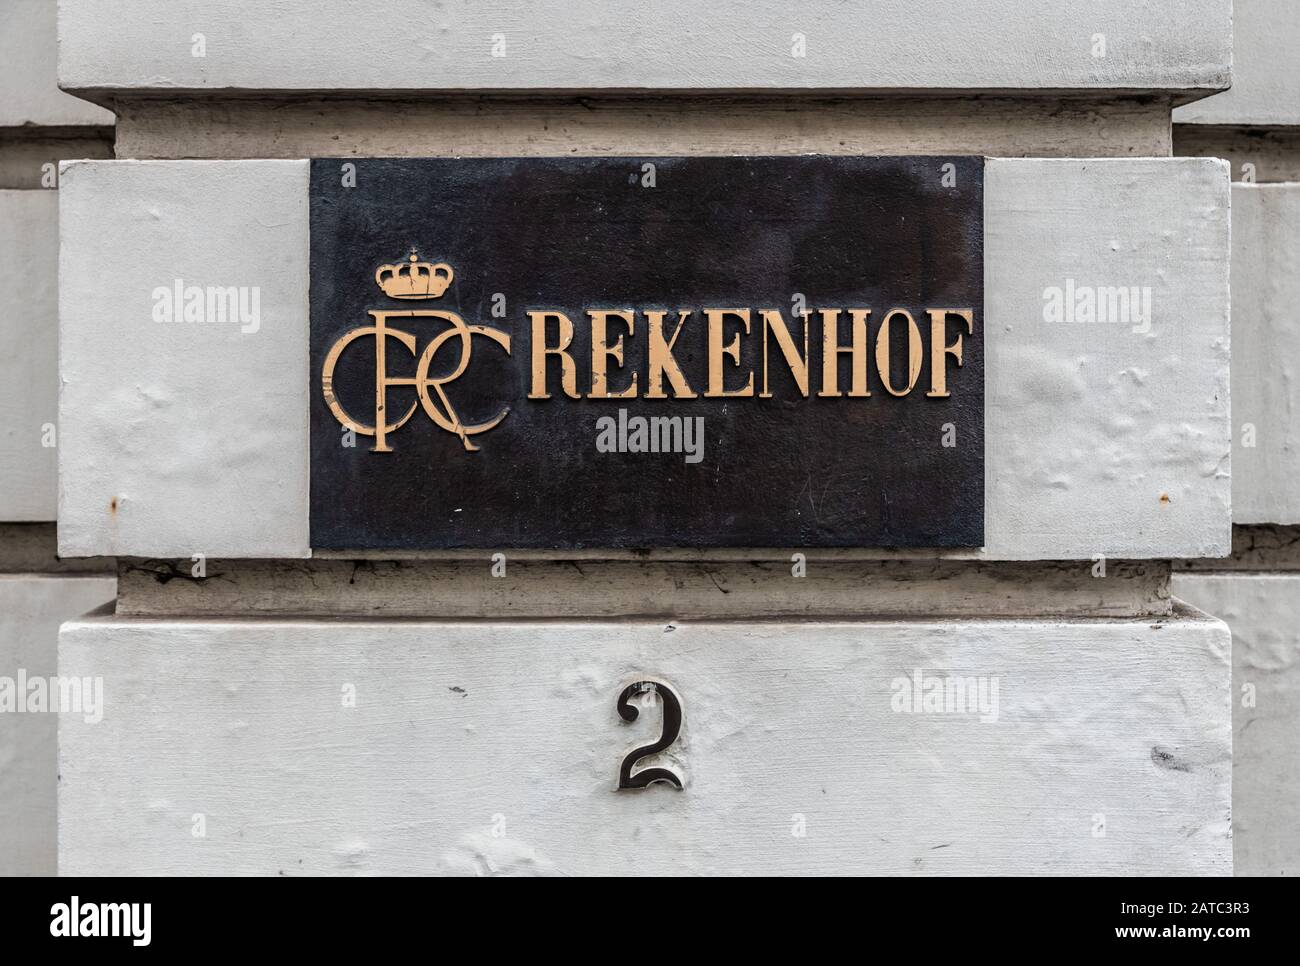 Bruxelles Vieille Ville, Bruxelles région de la capitale / Belgique - 12 20 2019: Signe d'or de la Cour de contrôle de la Belgique appelé Rekenoh - Cour des comptes Banque D'Images